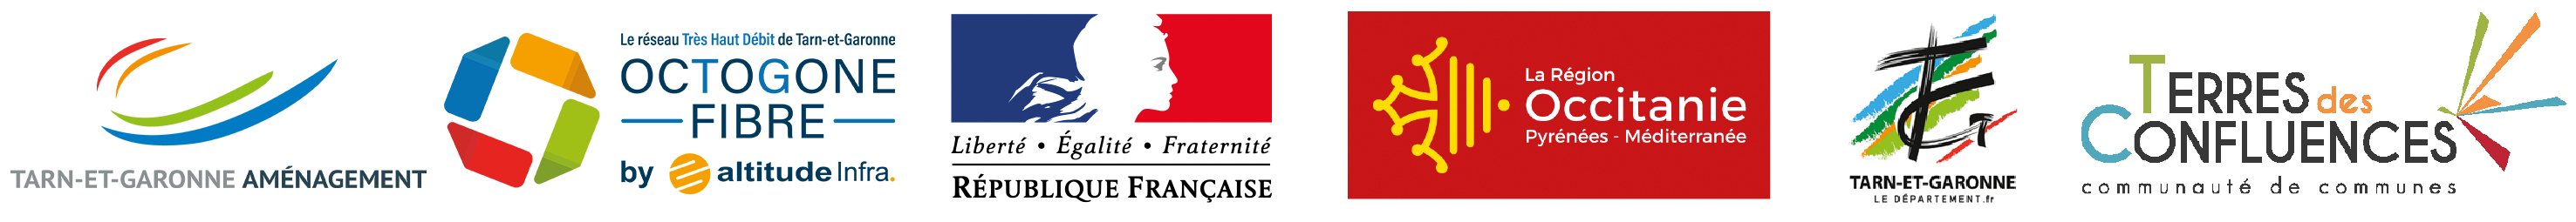 Logos : Tarn-et-Garonne aménagement, Octogone fibre, République Française, La Région Occitanie, le Conseil Départemental de Tarn-et-Garonne et la Communauté de communes Terres des Confluences